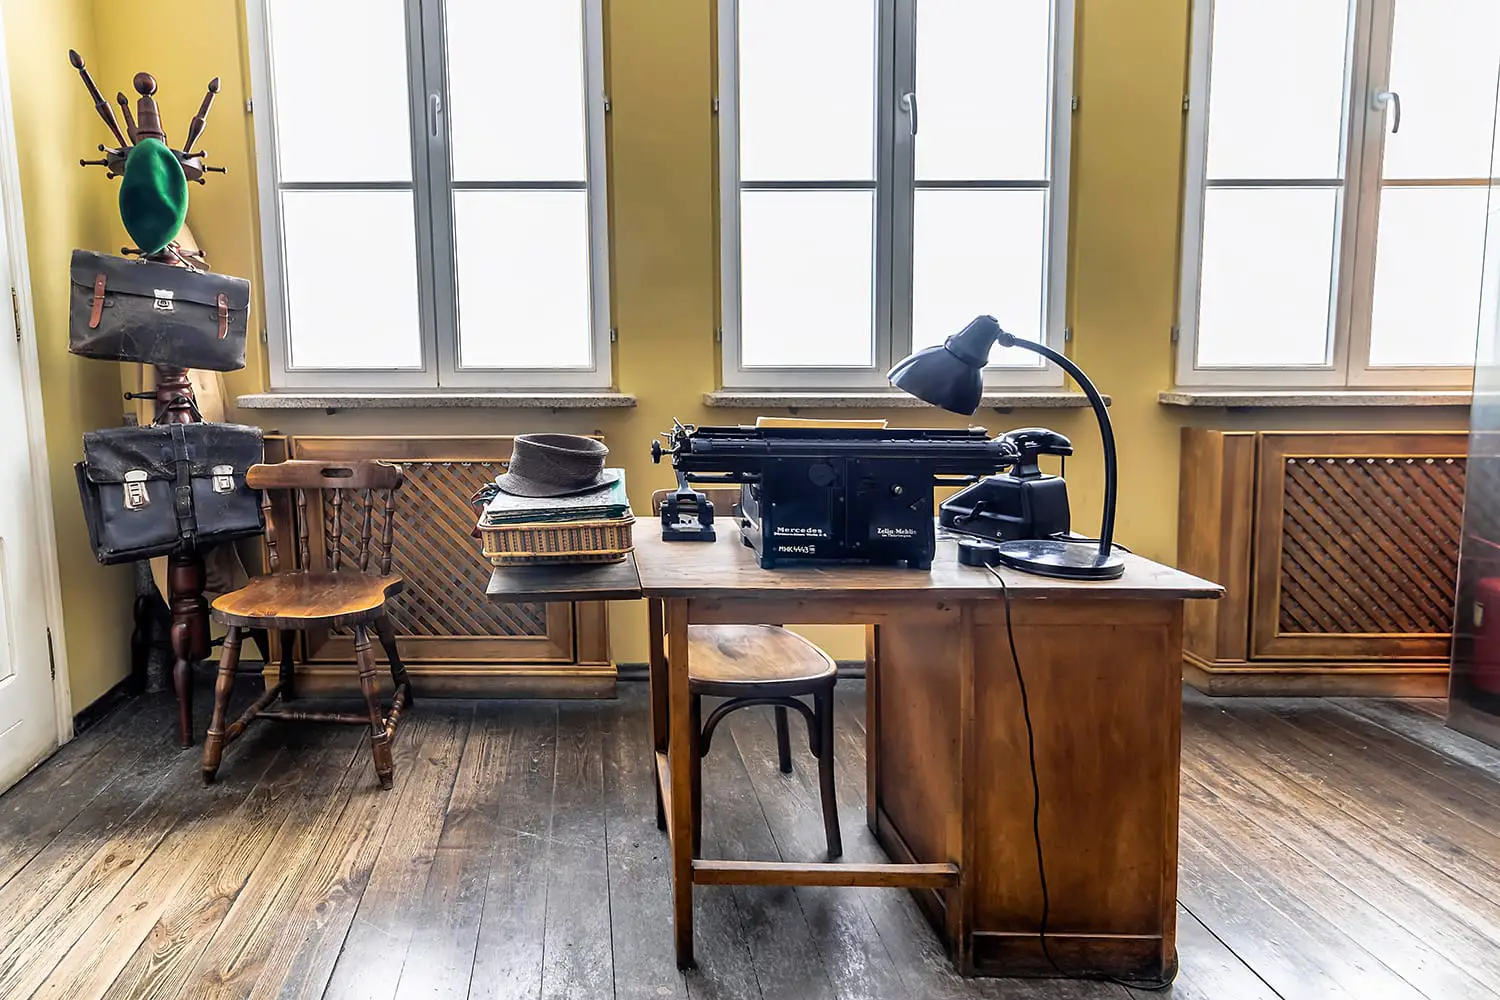 Original office used by Oskar Schindler secretary to write the Oskar Schindler's list. On display in Oskar Schindler's Enamel factory museum in Krakow, Poland